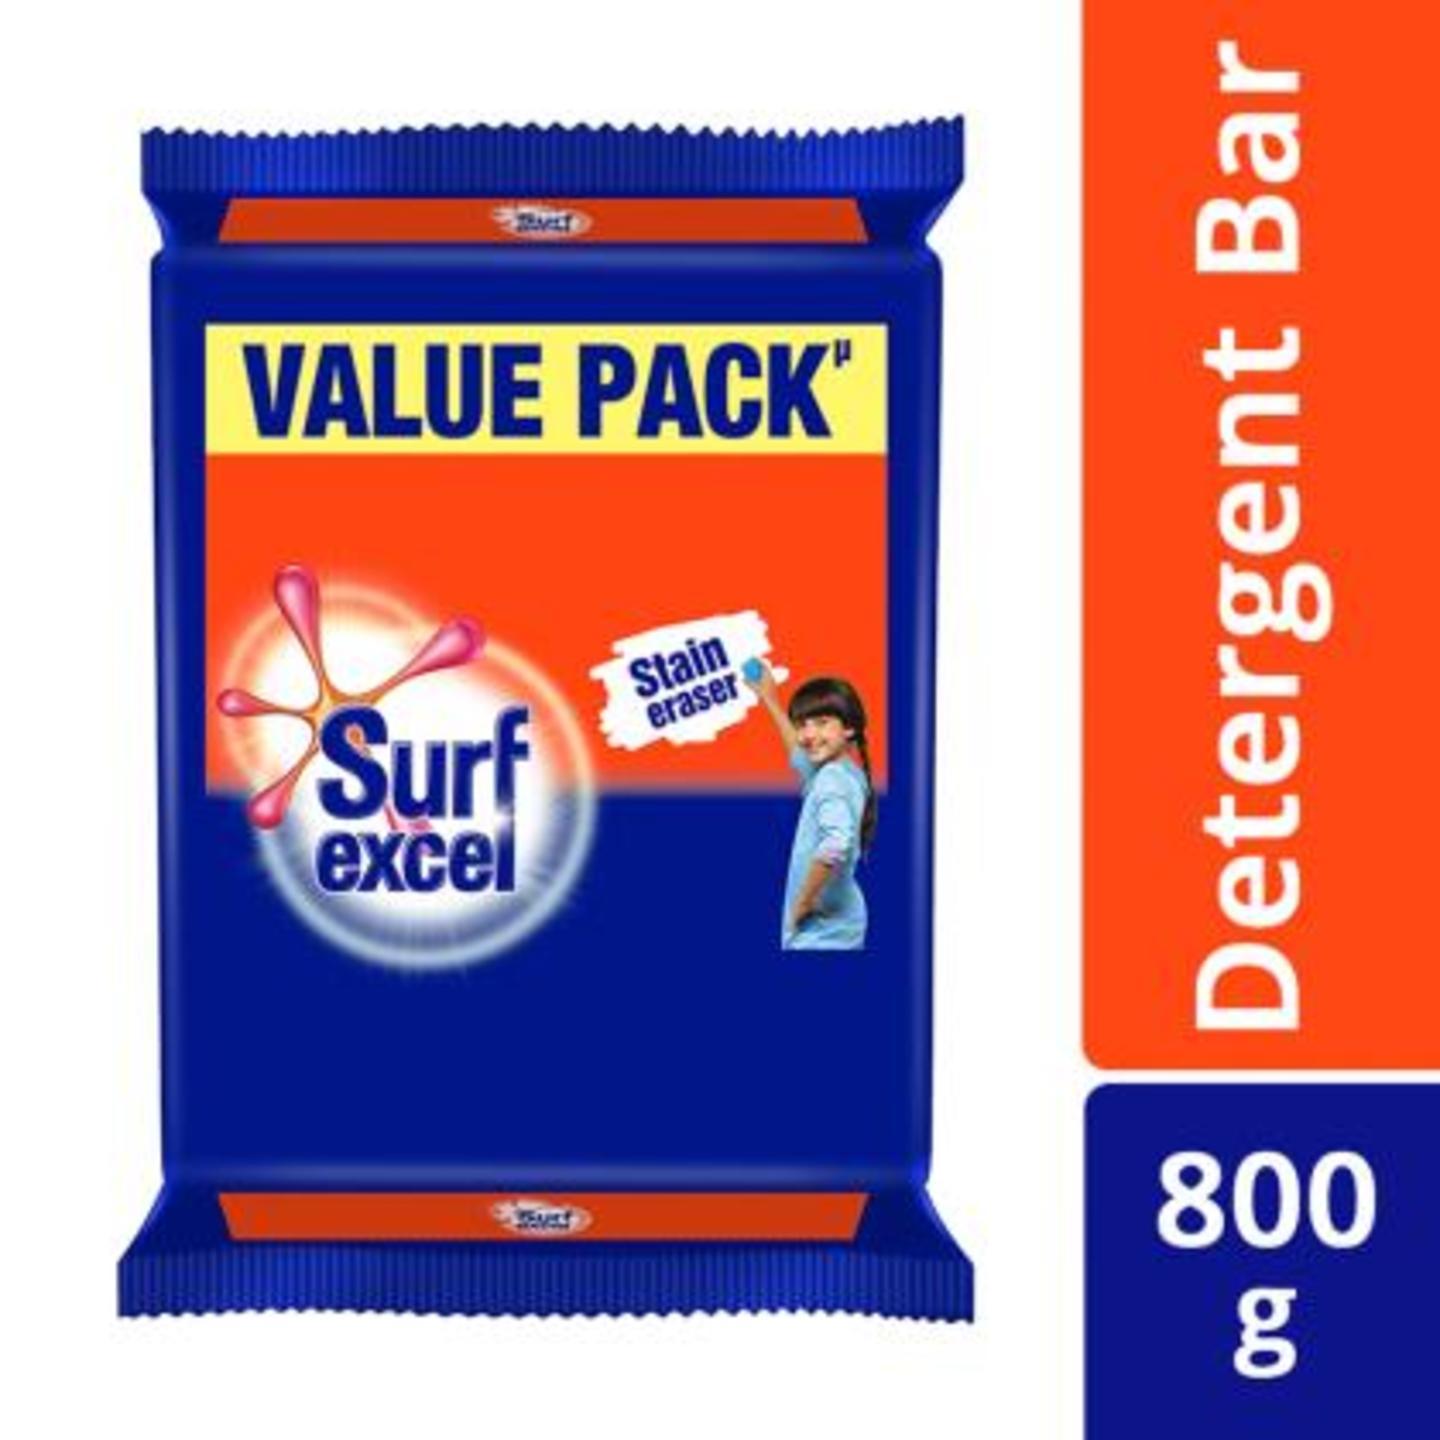 Surf Excel Detergent Bar 200 g Pack of 4